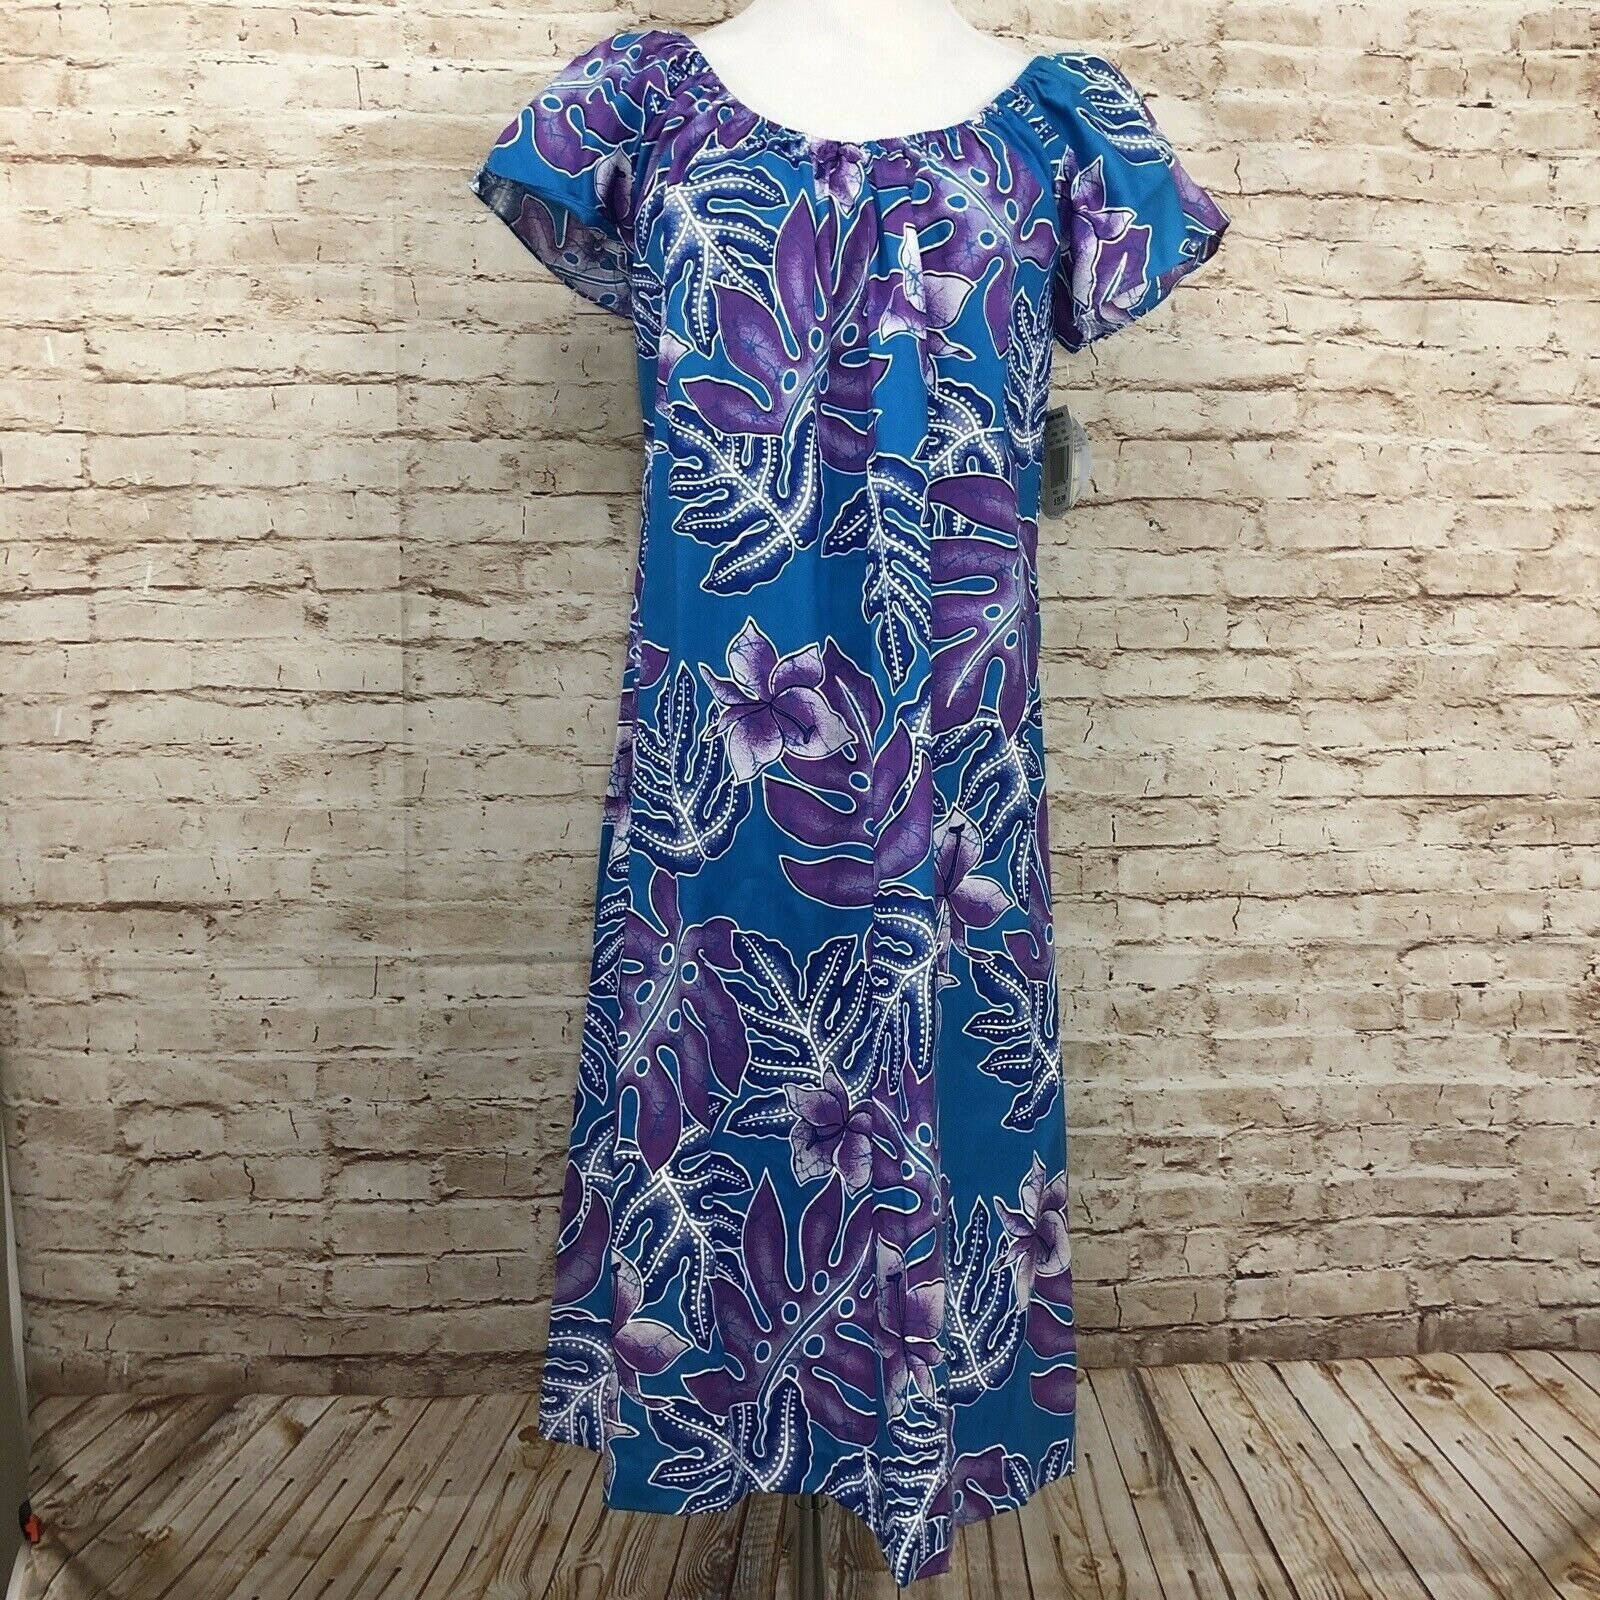 Larger size purple flowered Hilo Hattie Hawaiian dress